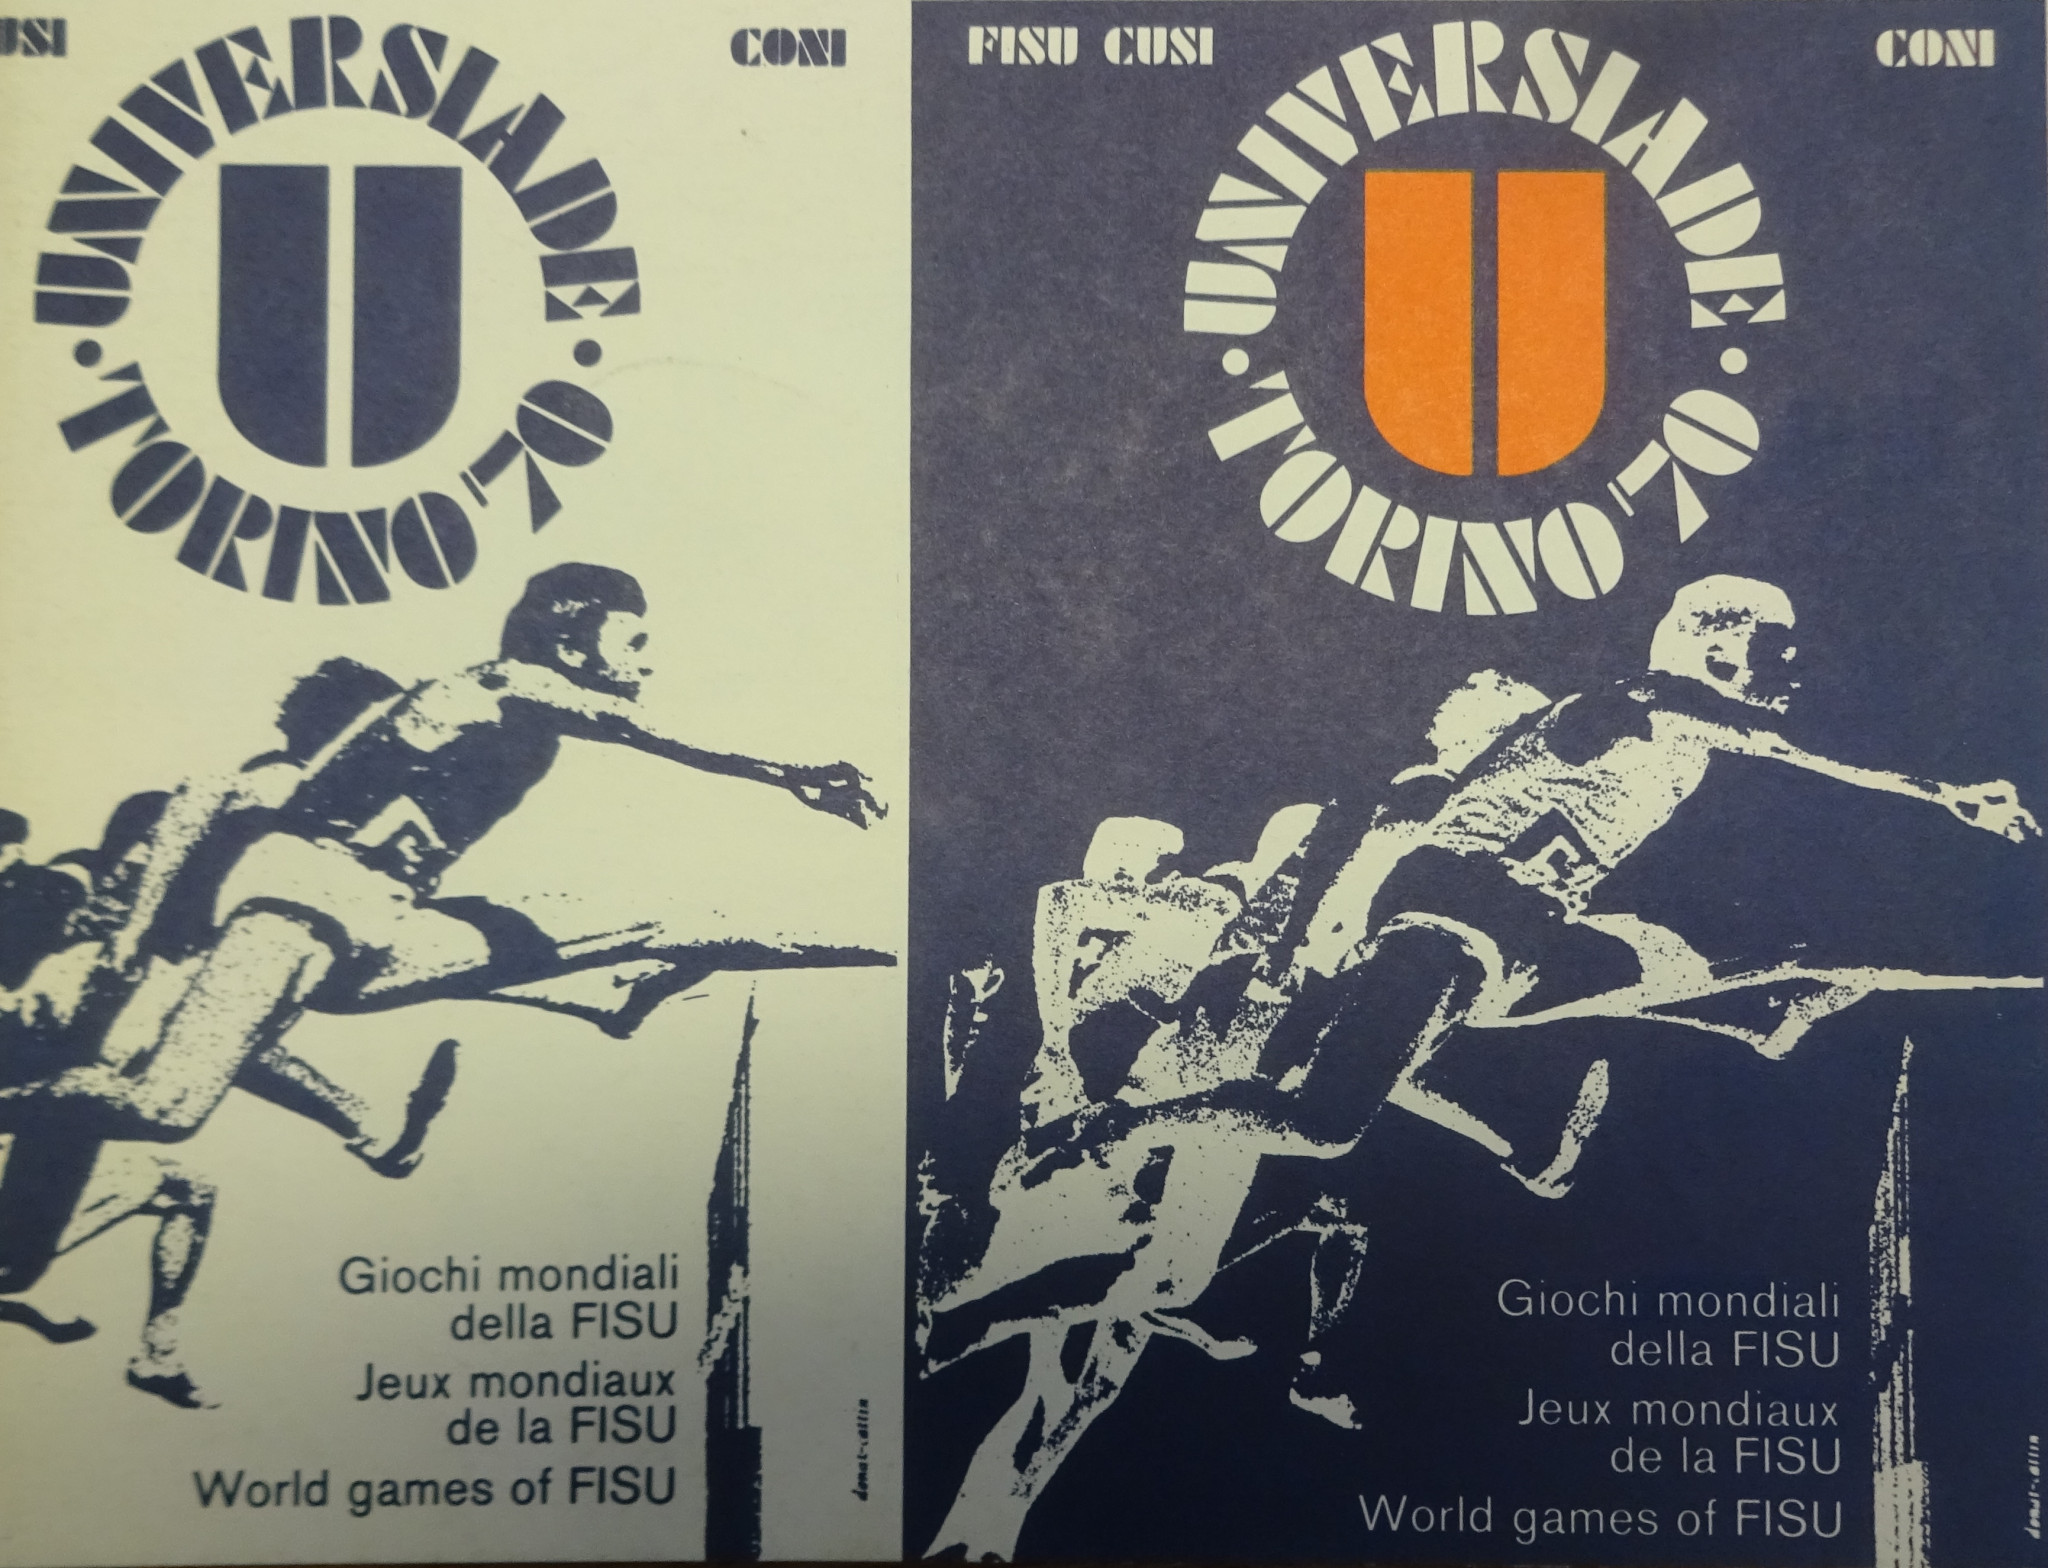 The poster designed for 1970 ©FISU/CUSI/CONI